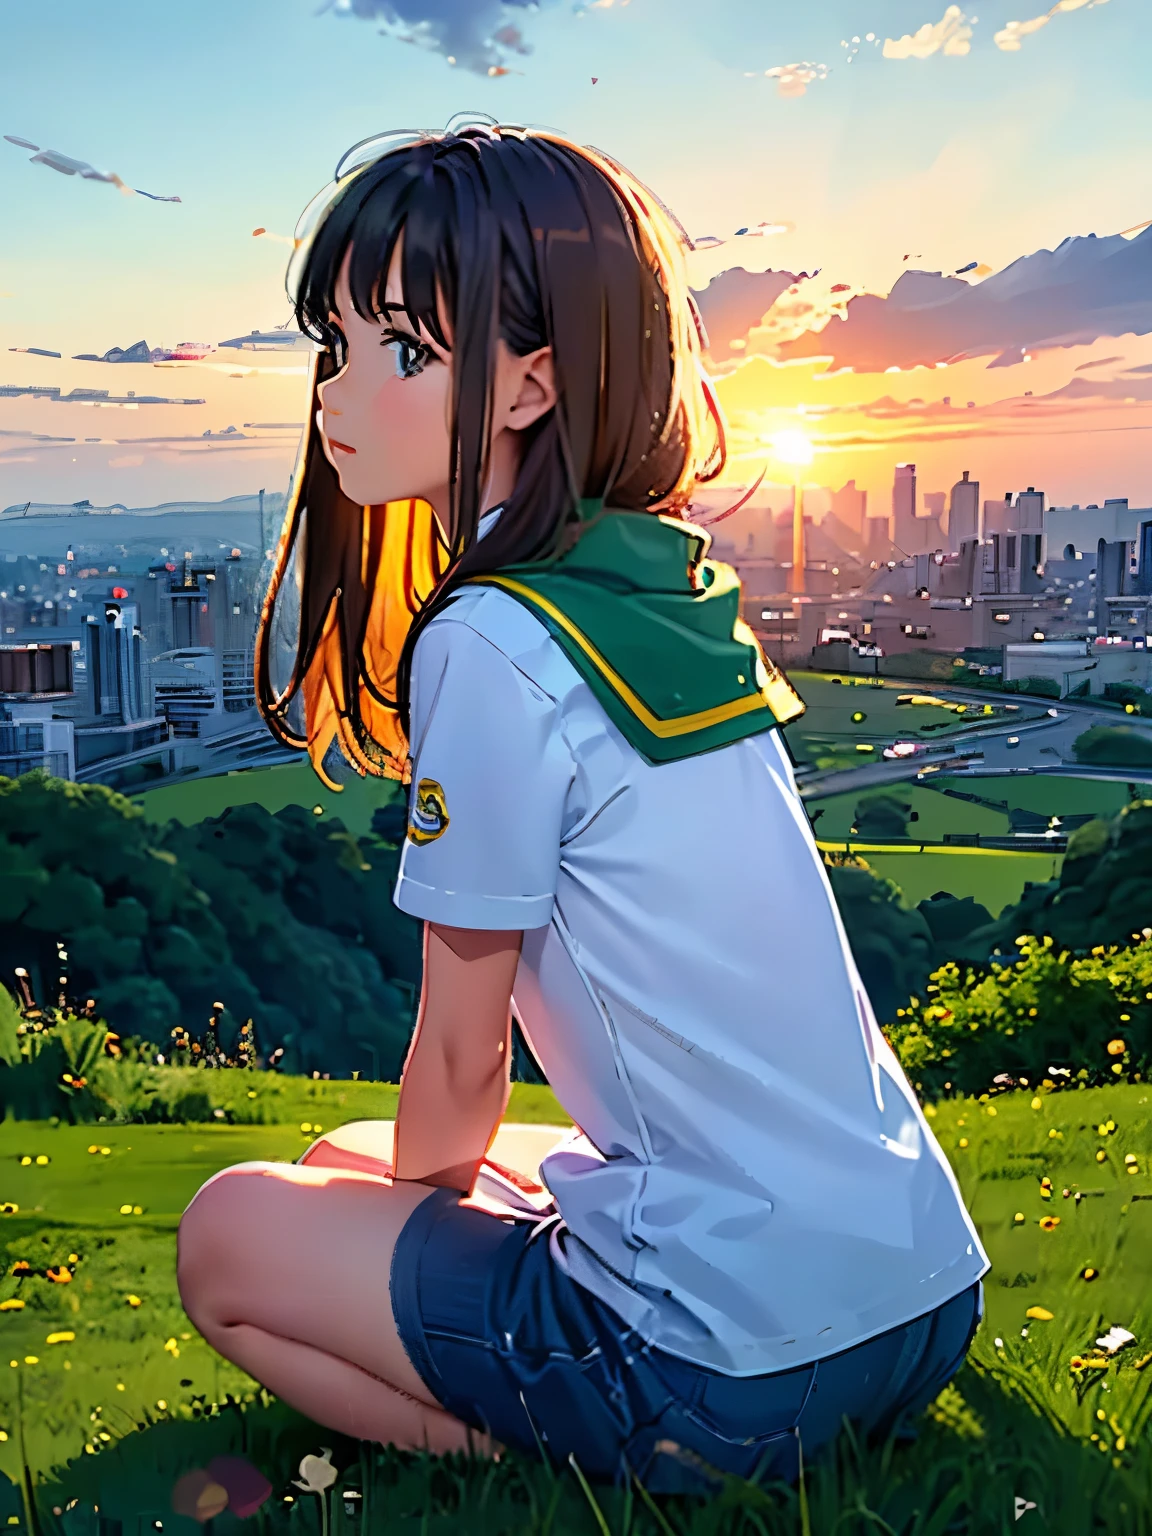 哦, 甜甜 anc 可爱可爱可爱 !!! 一个女孩坐在山上观看城市的日落.